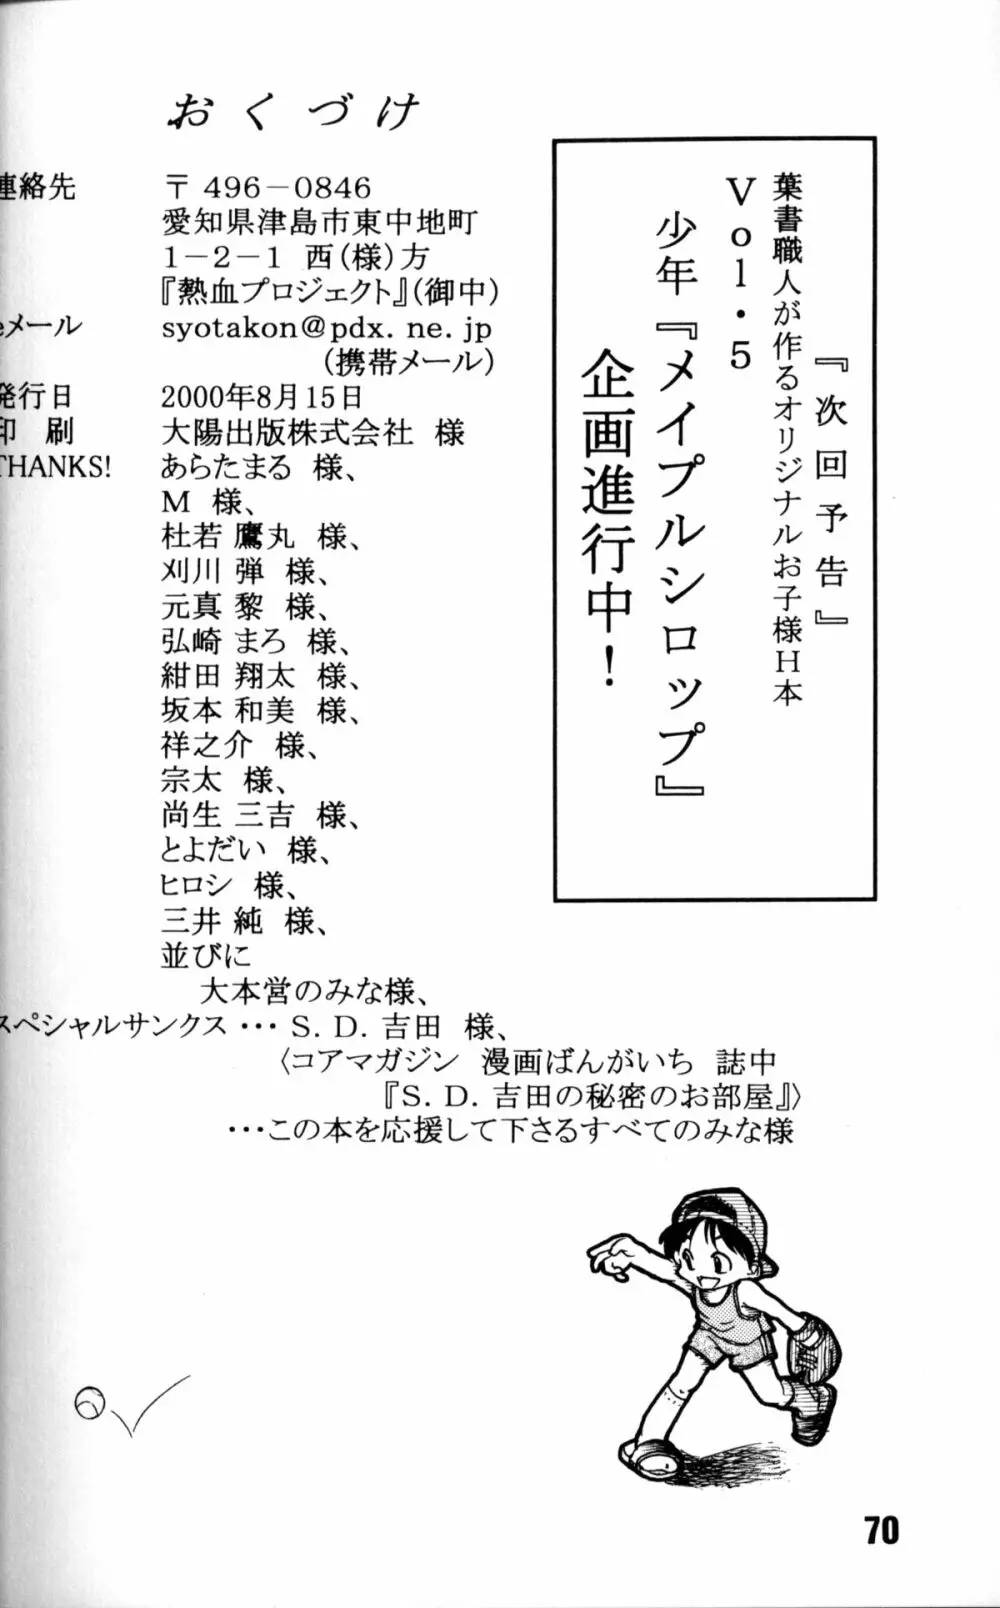 Anthology – Nekketsu Project – Volume 4 ‘Shounen Vanilla Essence’ 69ページ